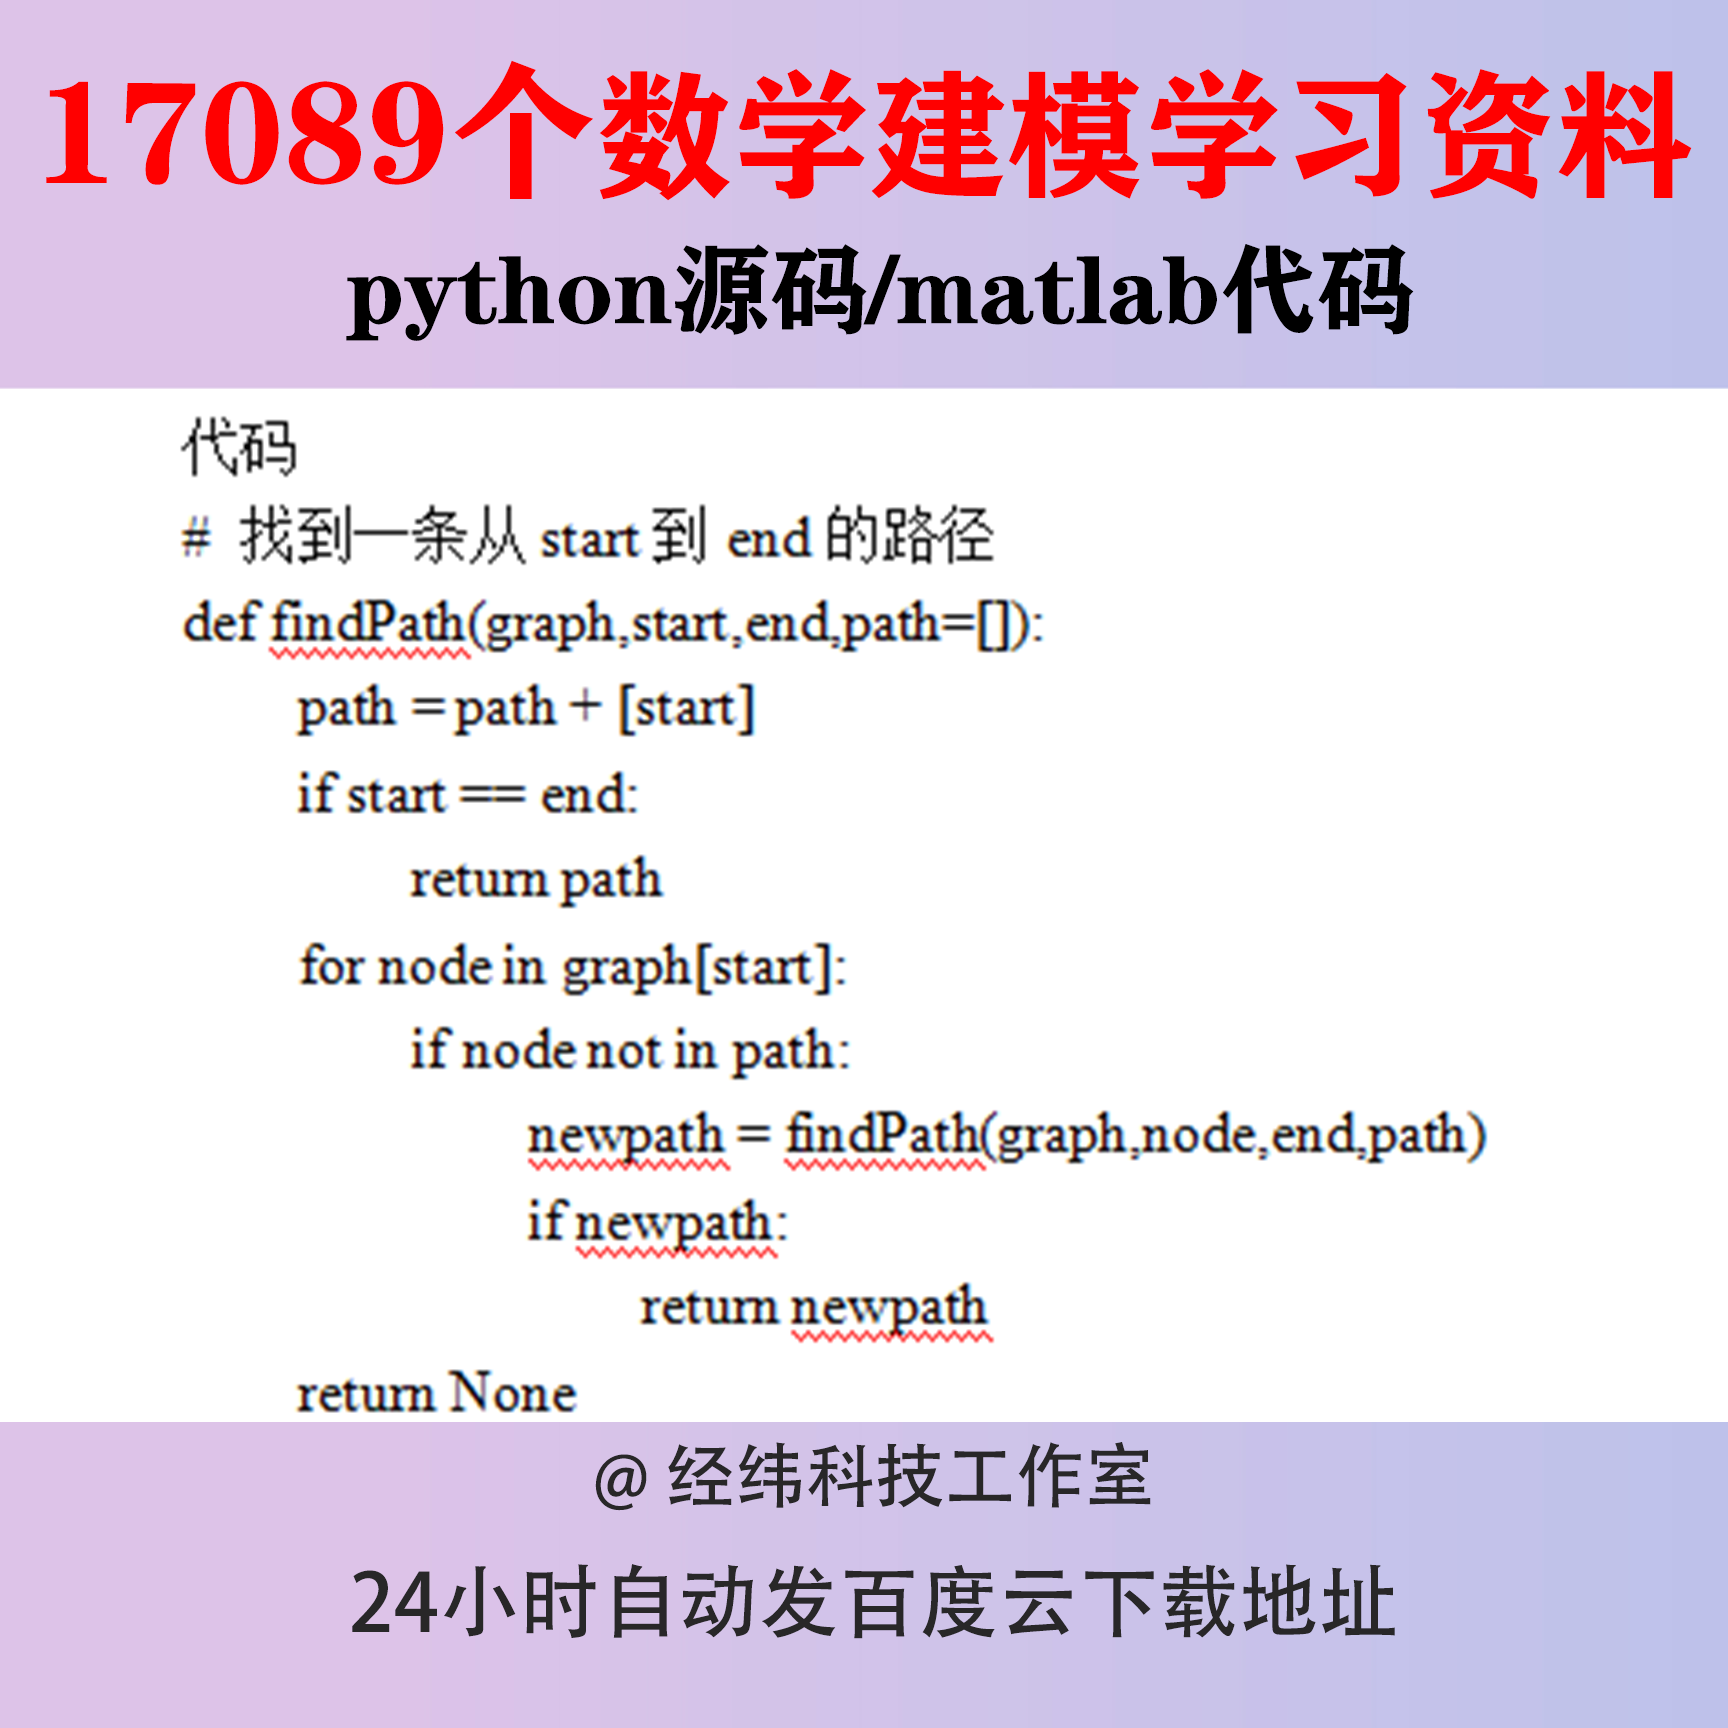 数学建模python源码资料源代码程序编程matlab模型竞赛实例案例